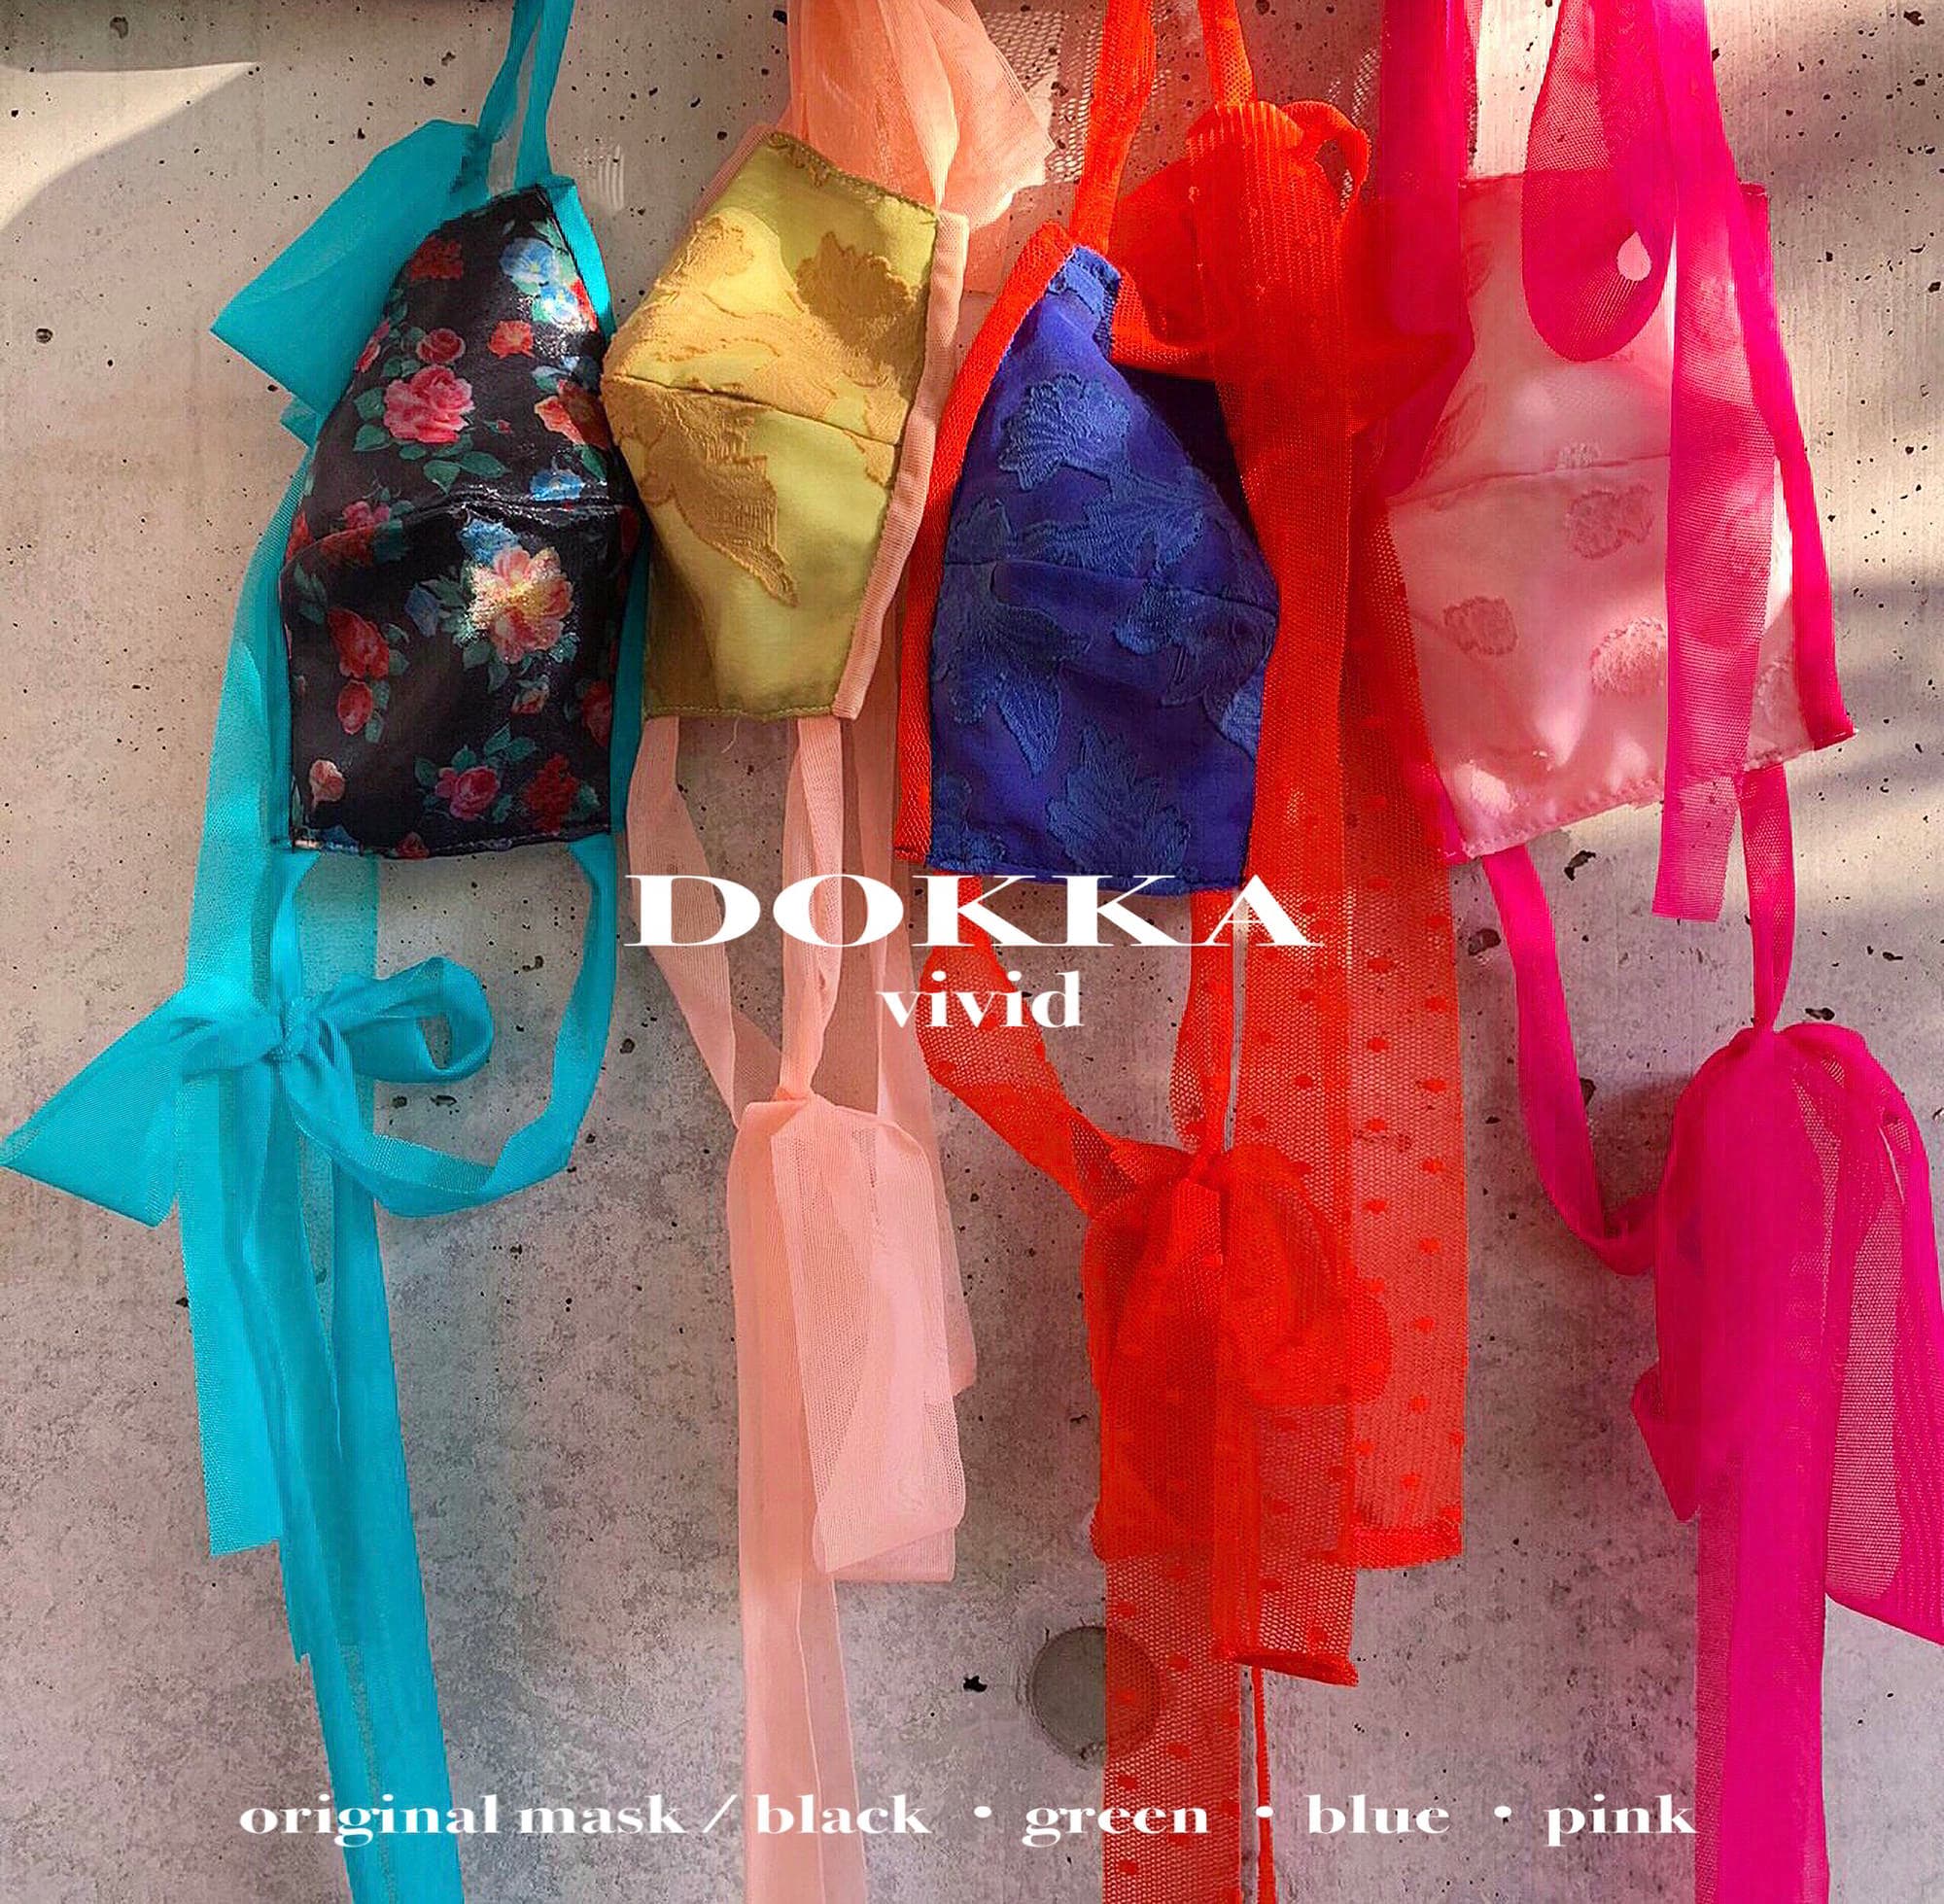 コロナ禍期間にECや百貨店のポップアップストアで販売したアクセサリー感覚で楽しめるマスク「DOKKA mask」 